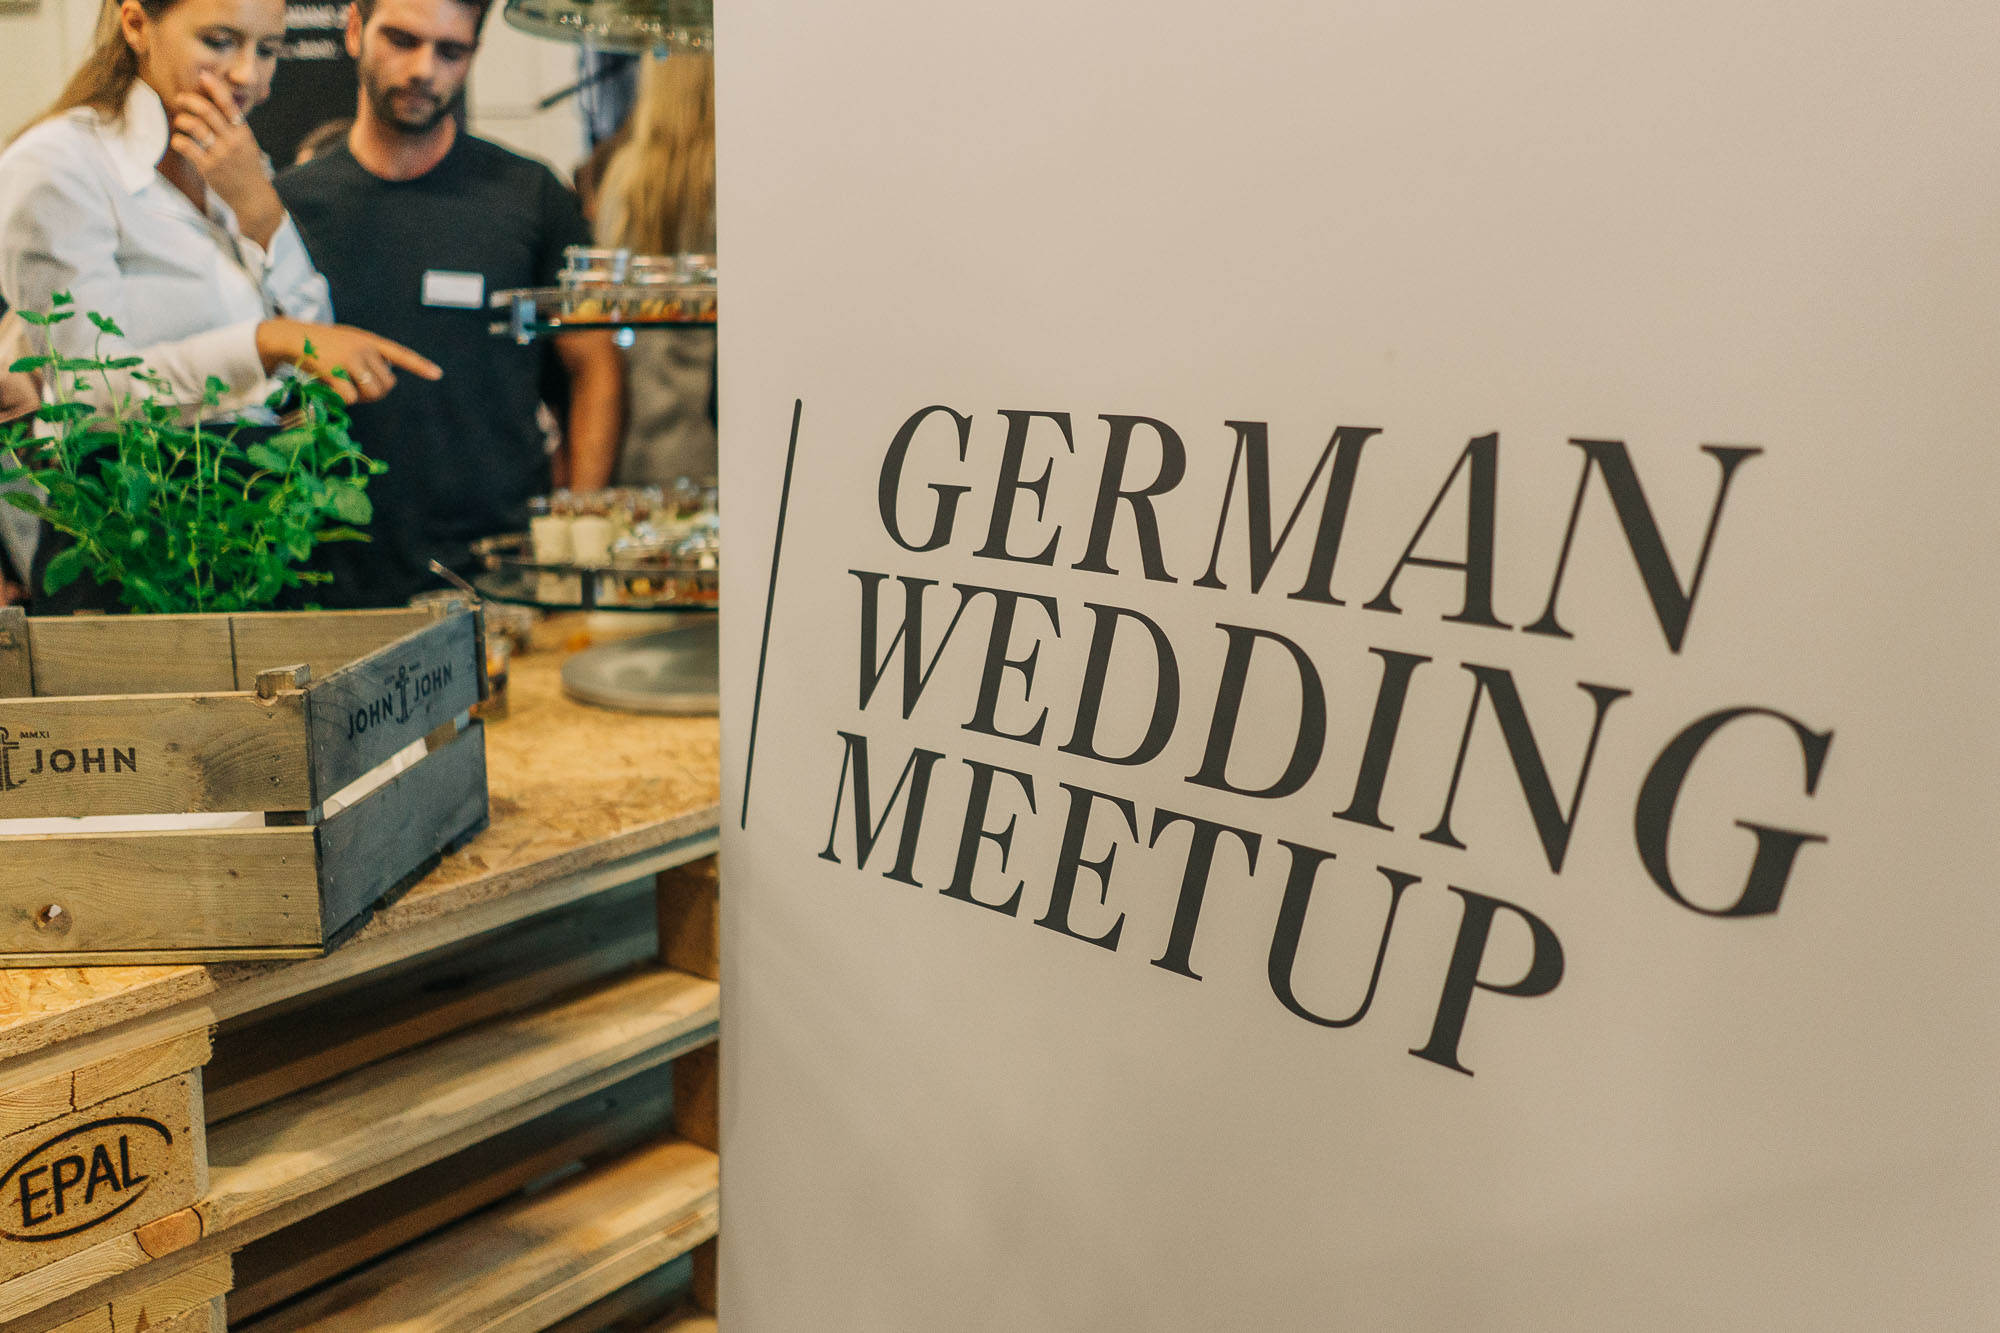 photokina und Wedding Zone 2018 in Köln - Bild 3 - German Wedding Meetup